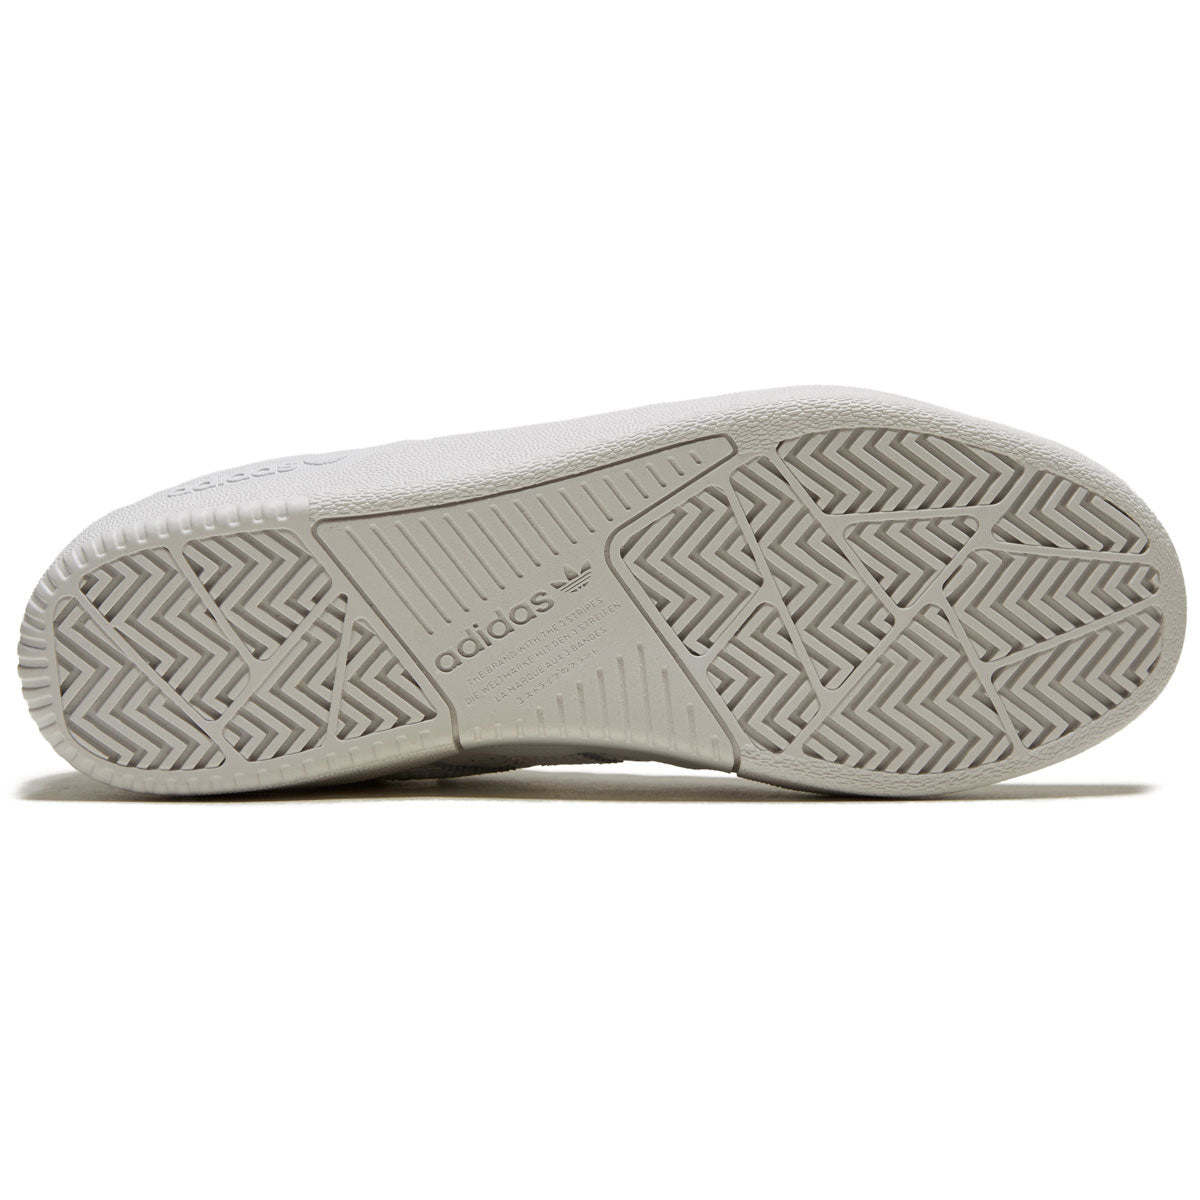 Adidas Tyshawn Shoes - White/White/Gold Metallic – CCS